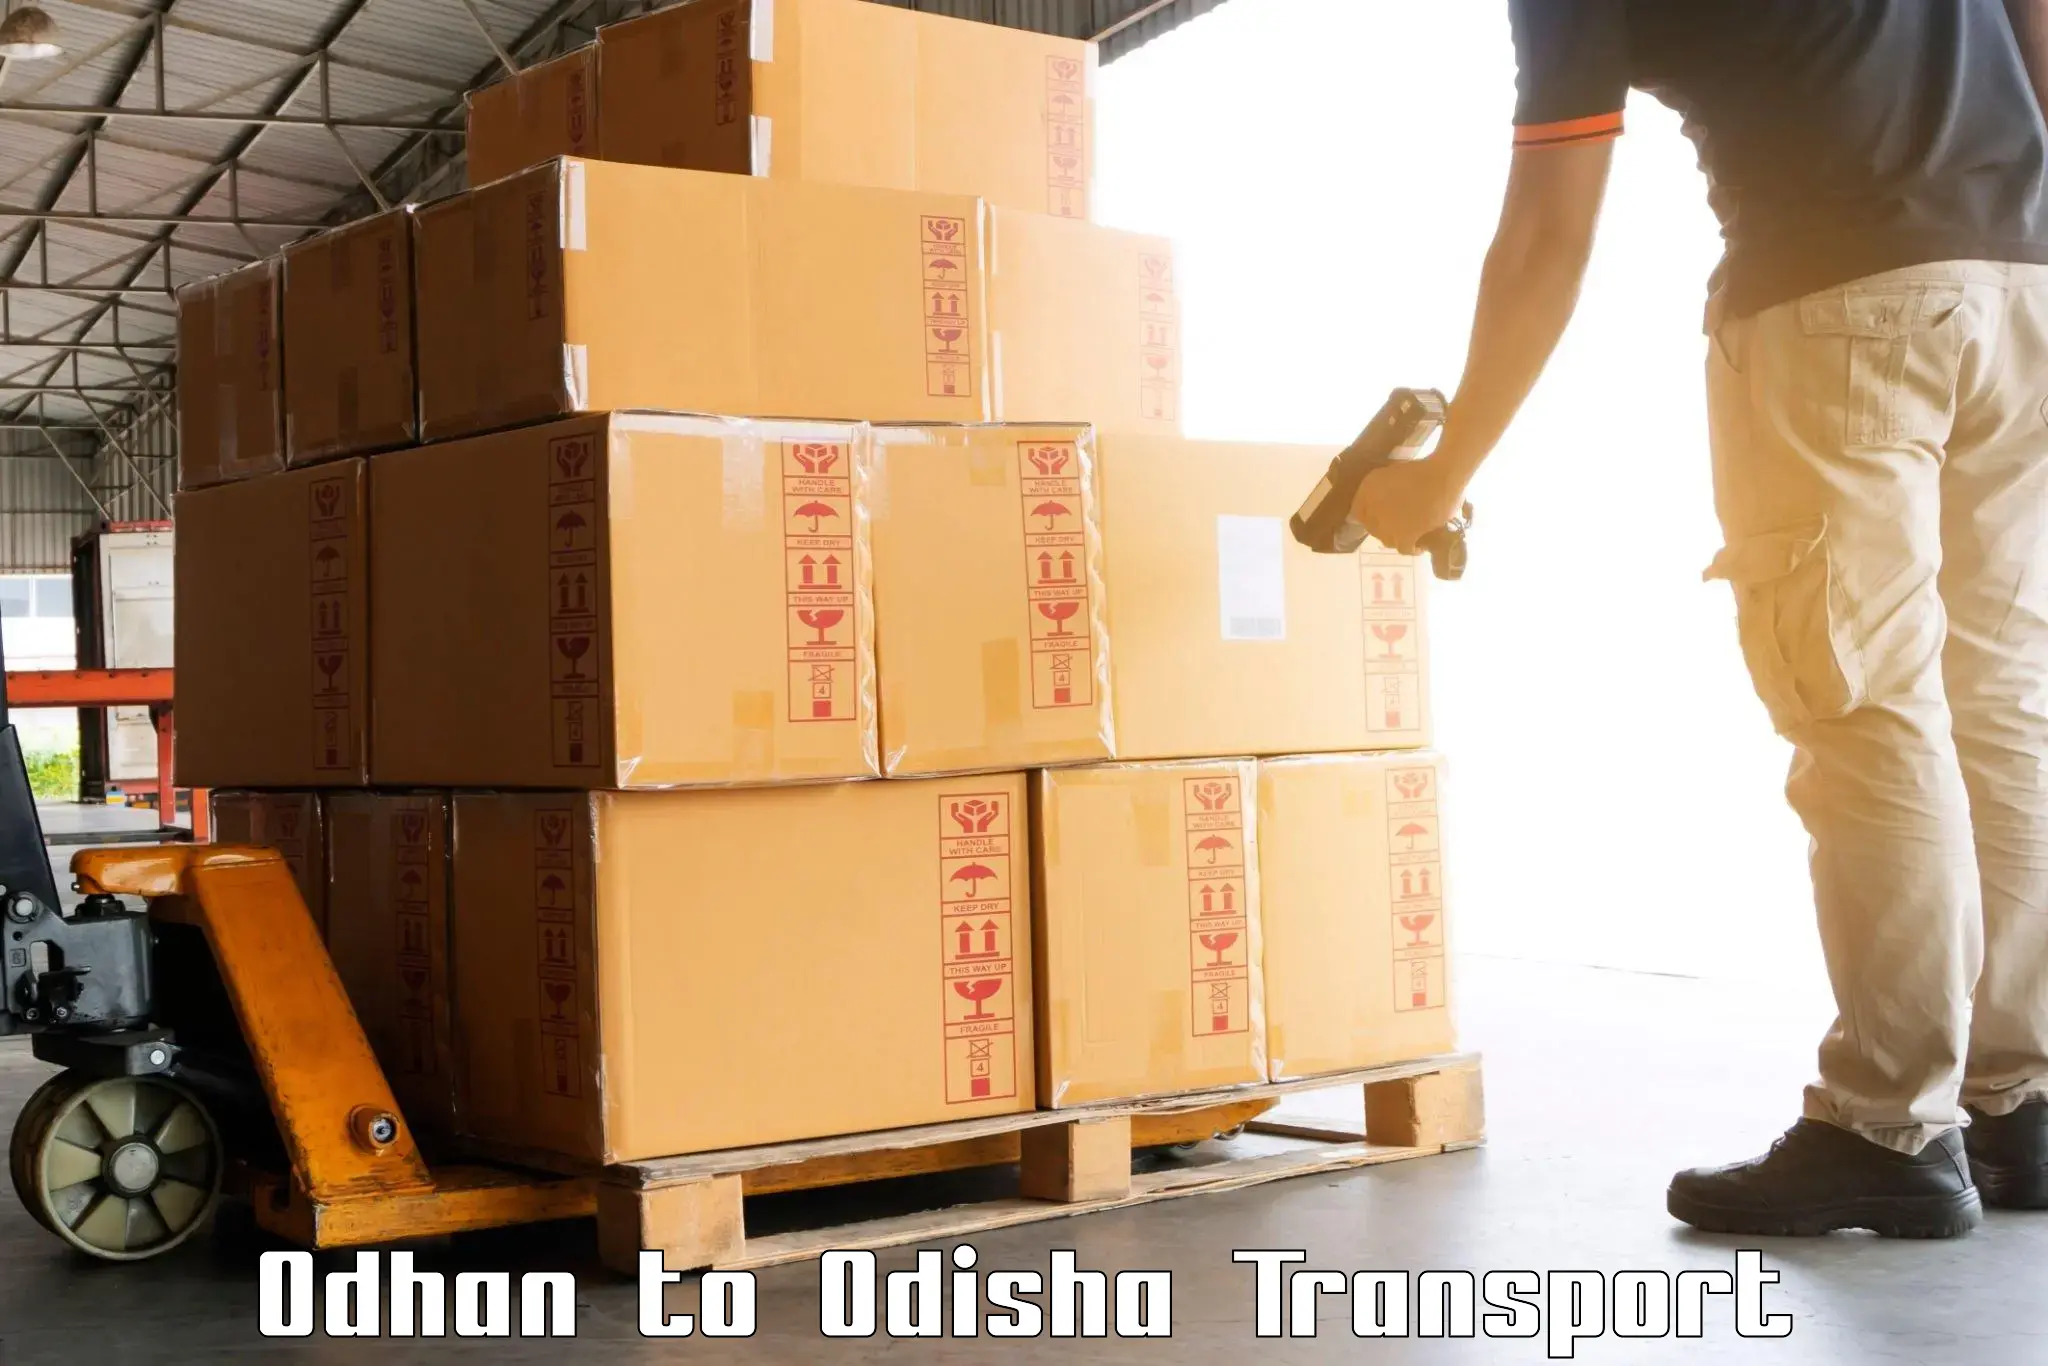 Interstate goods transport Odhan to Balasore